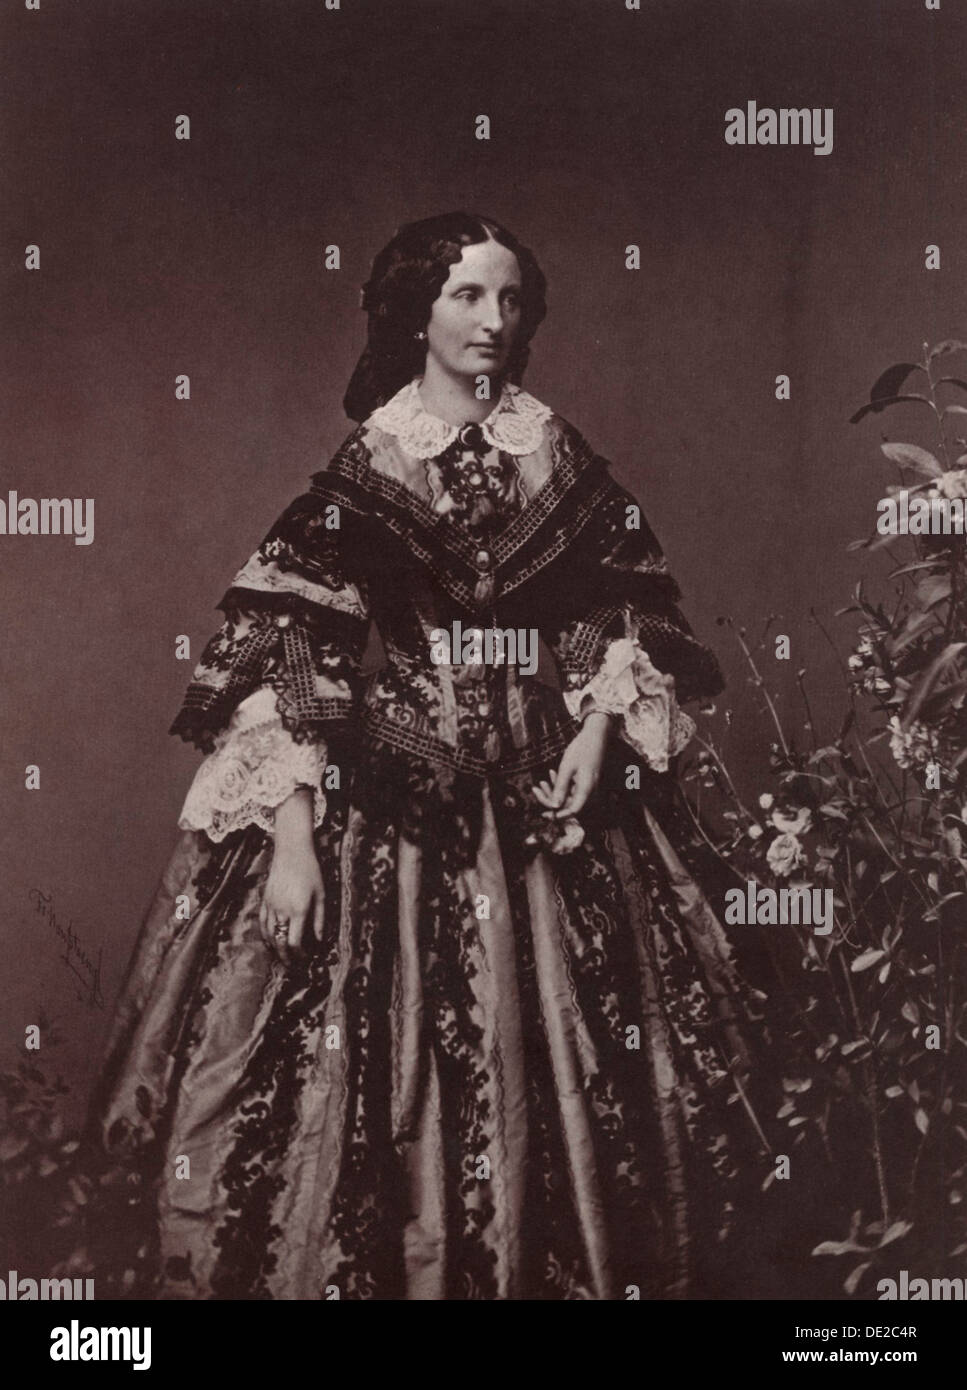 L'imperatrice Elisabetta d'Austria, del xix secolo. Artista: Franz Hanfstaengl Foto Stock